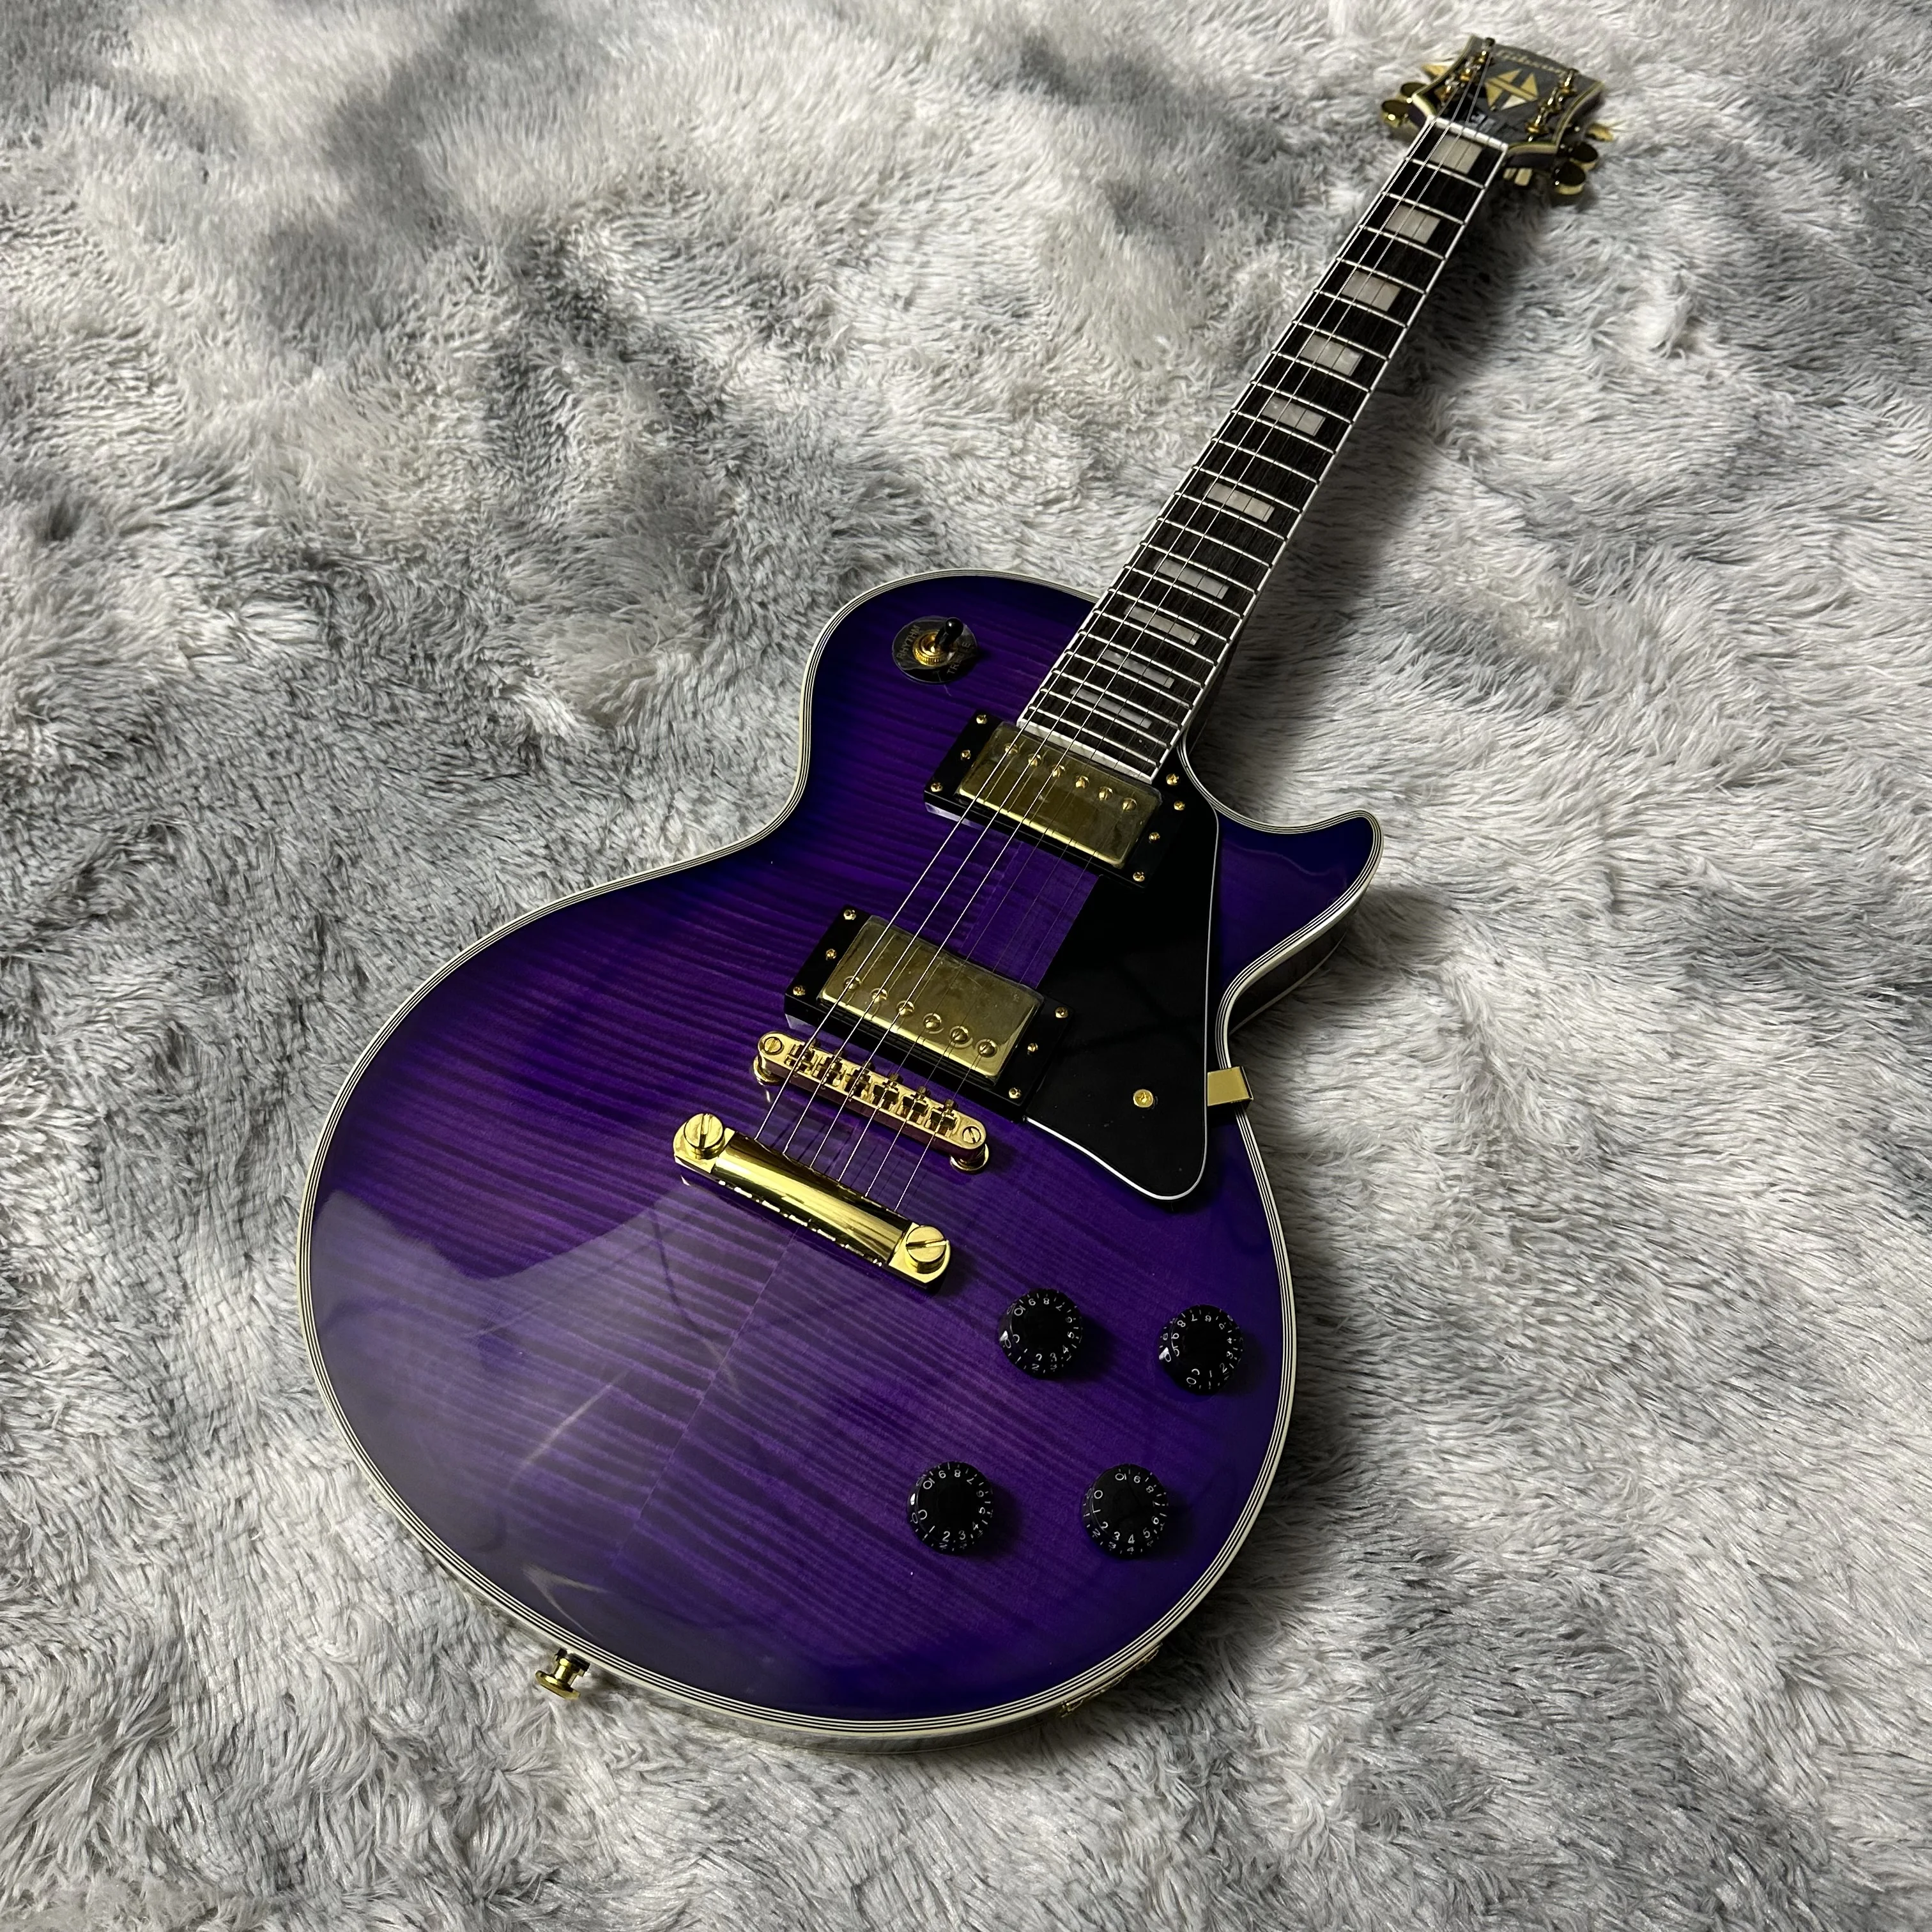 

Электрическая гитара Purple Custom LP с верхом из клена и пламенем, высококачественные звукосниматели и яркая поверхность краски, бесплатная доставка